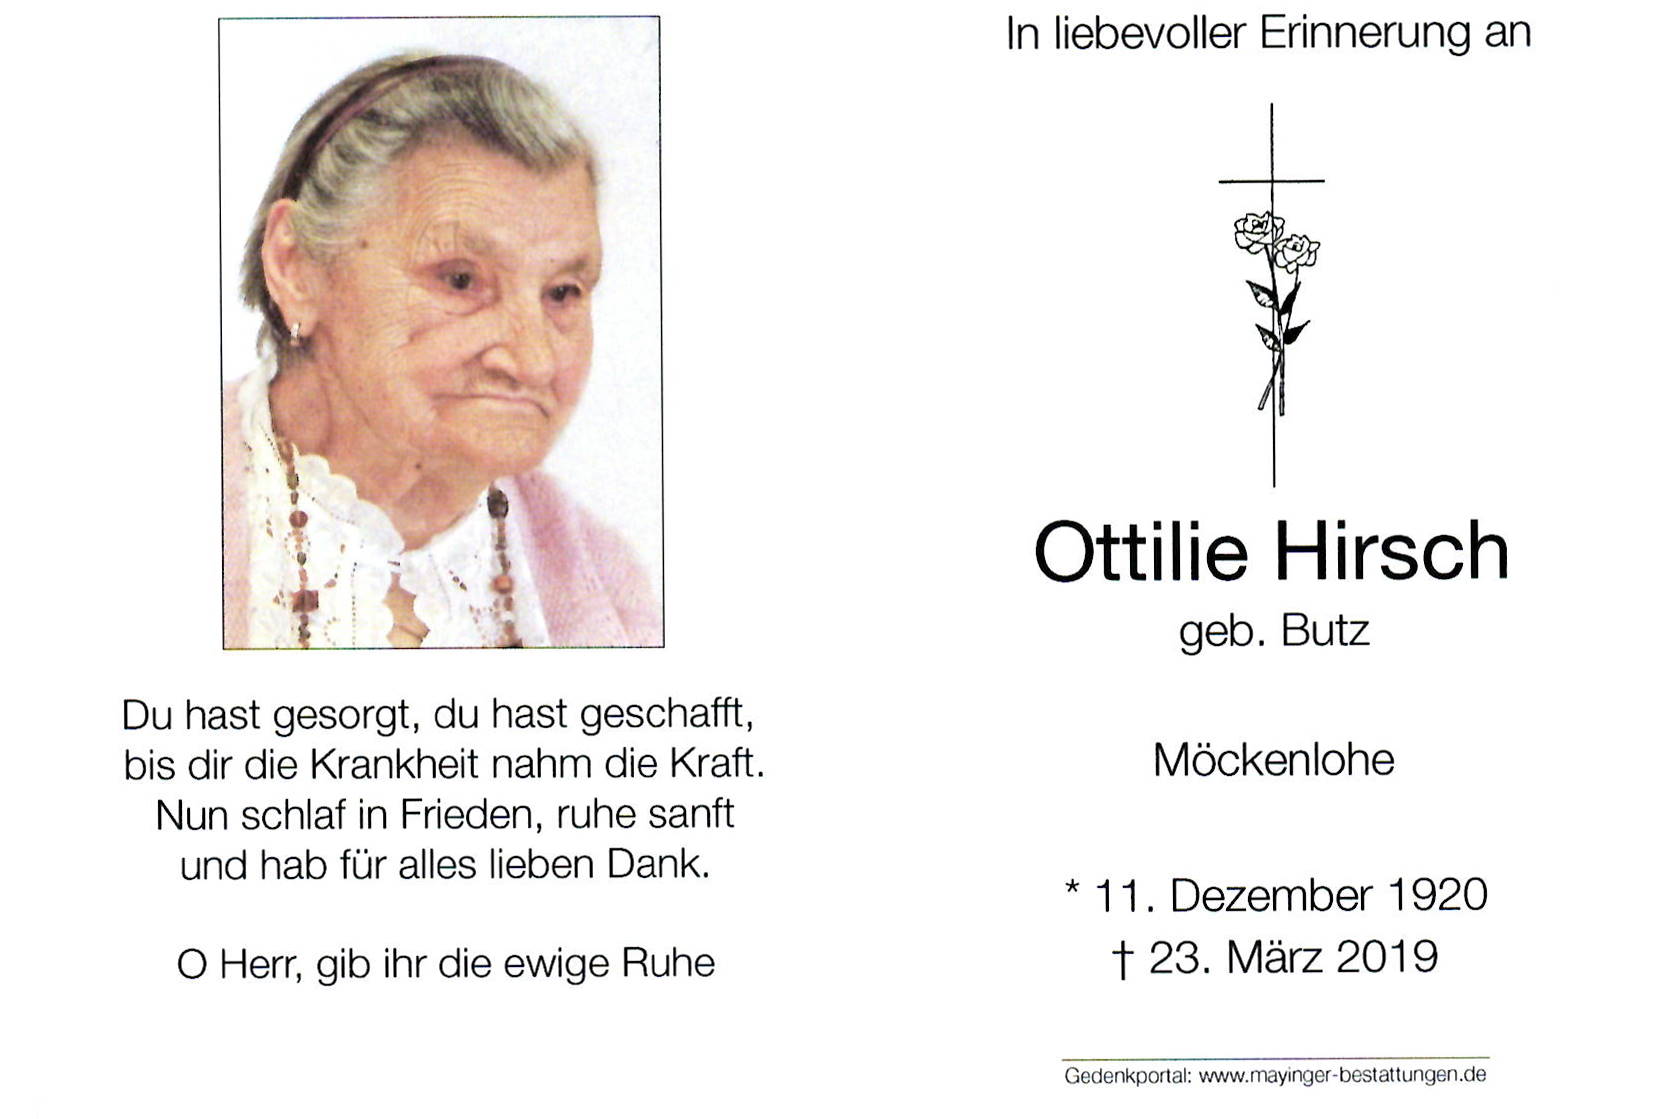 Ottilie Hirsch